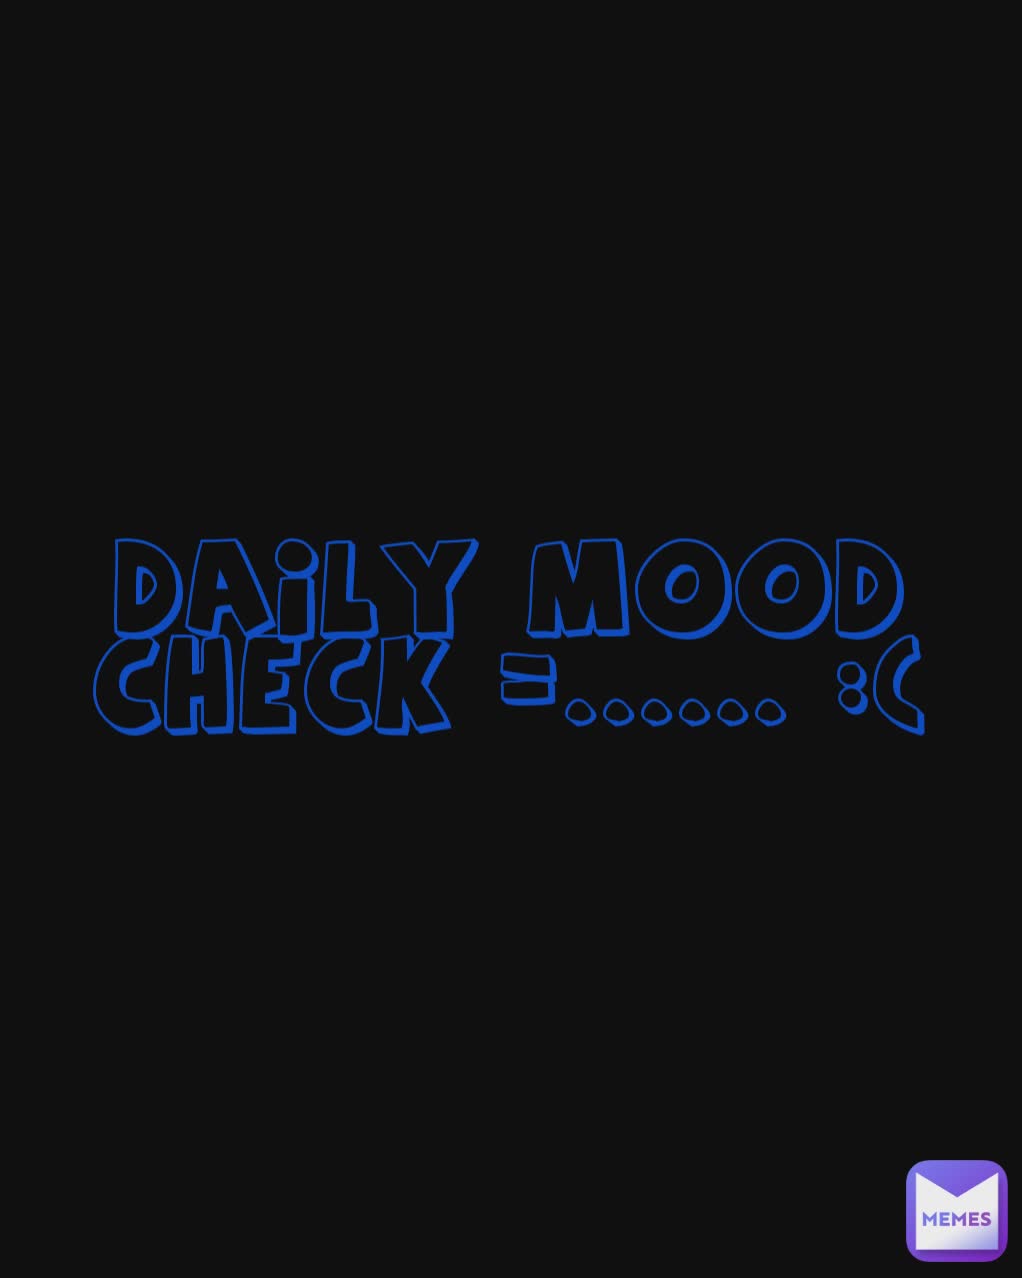 Daily Mood Check =...... :(